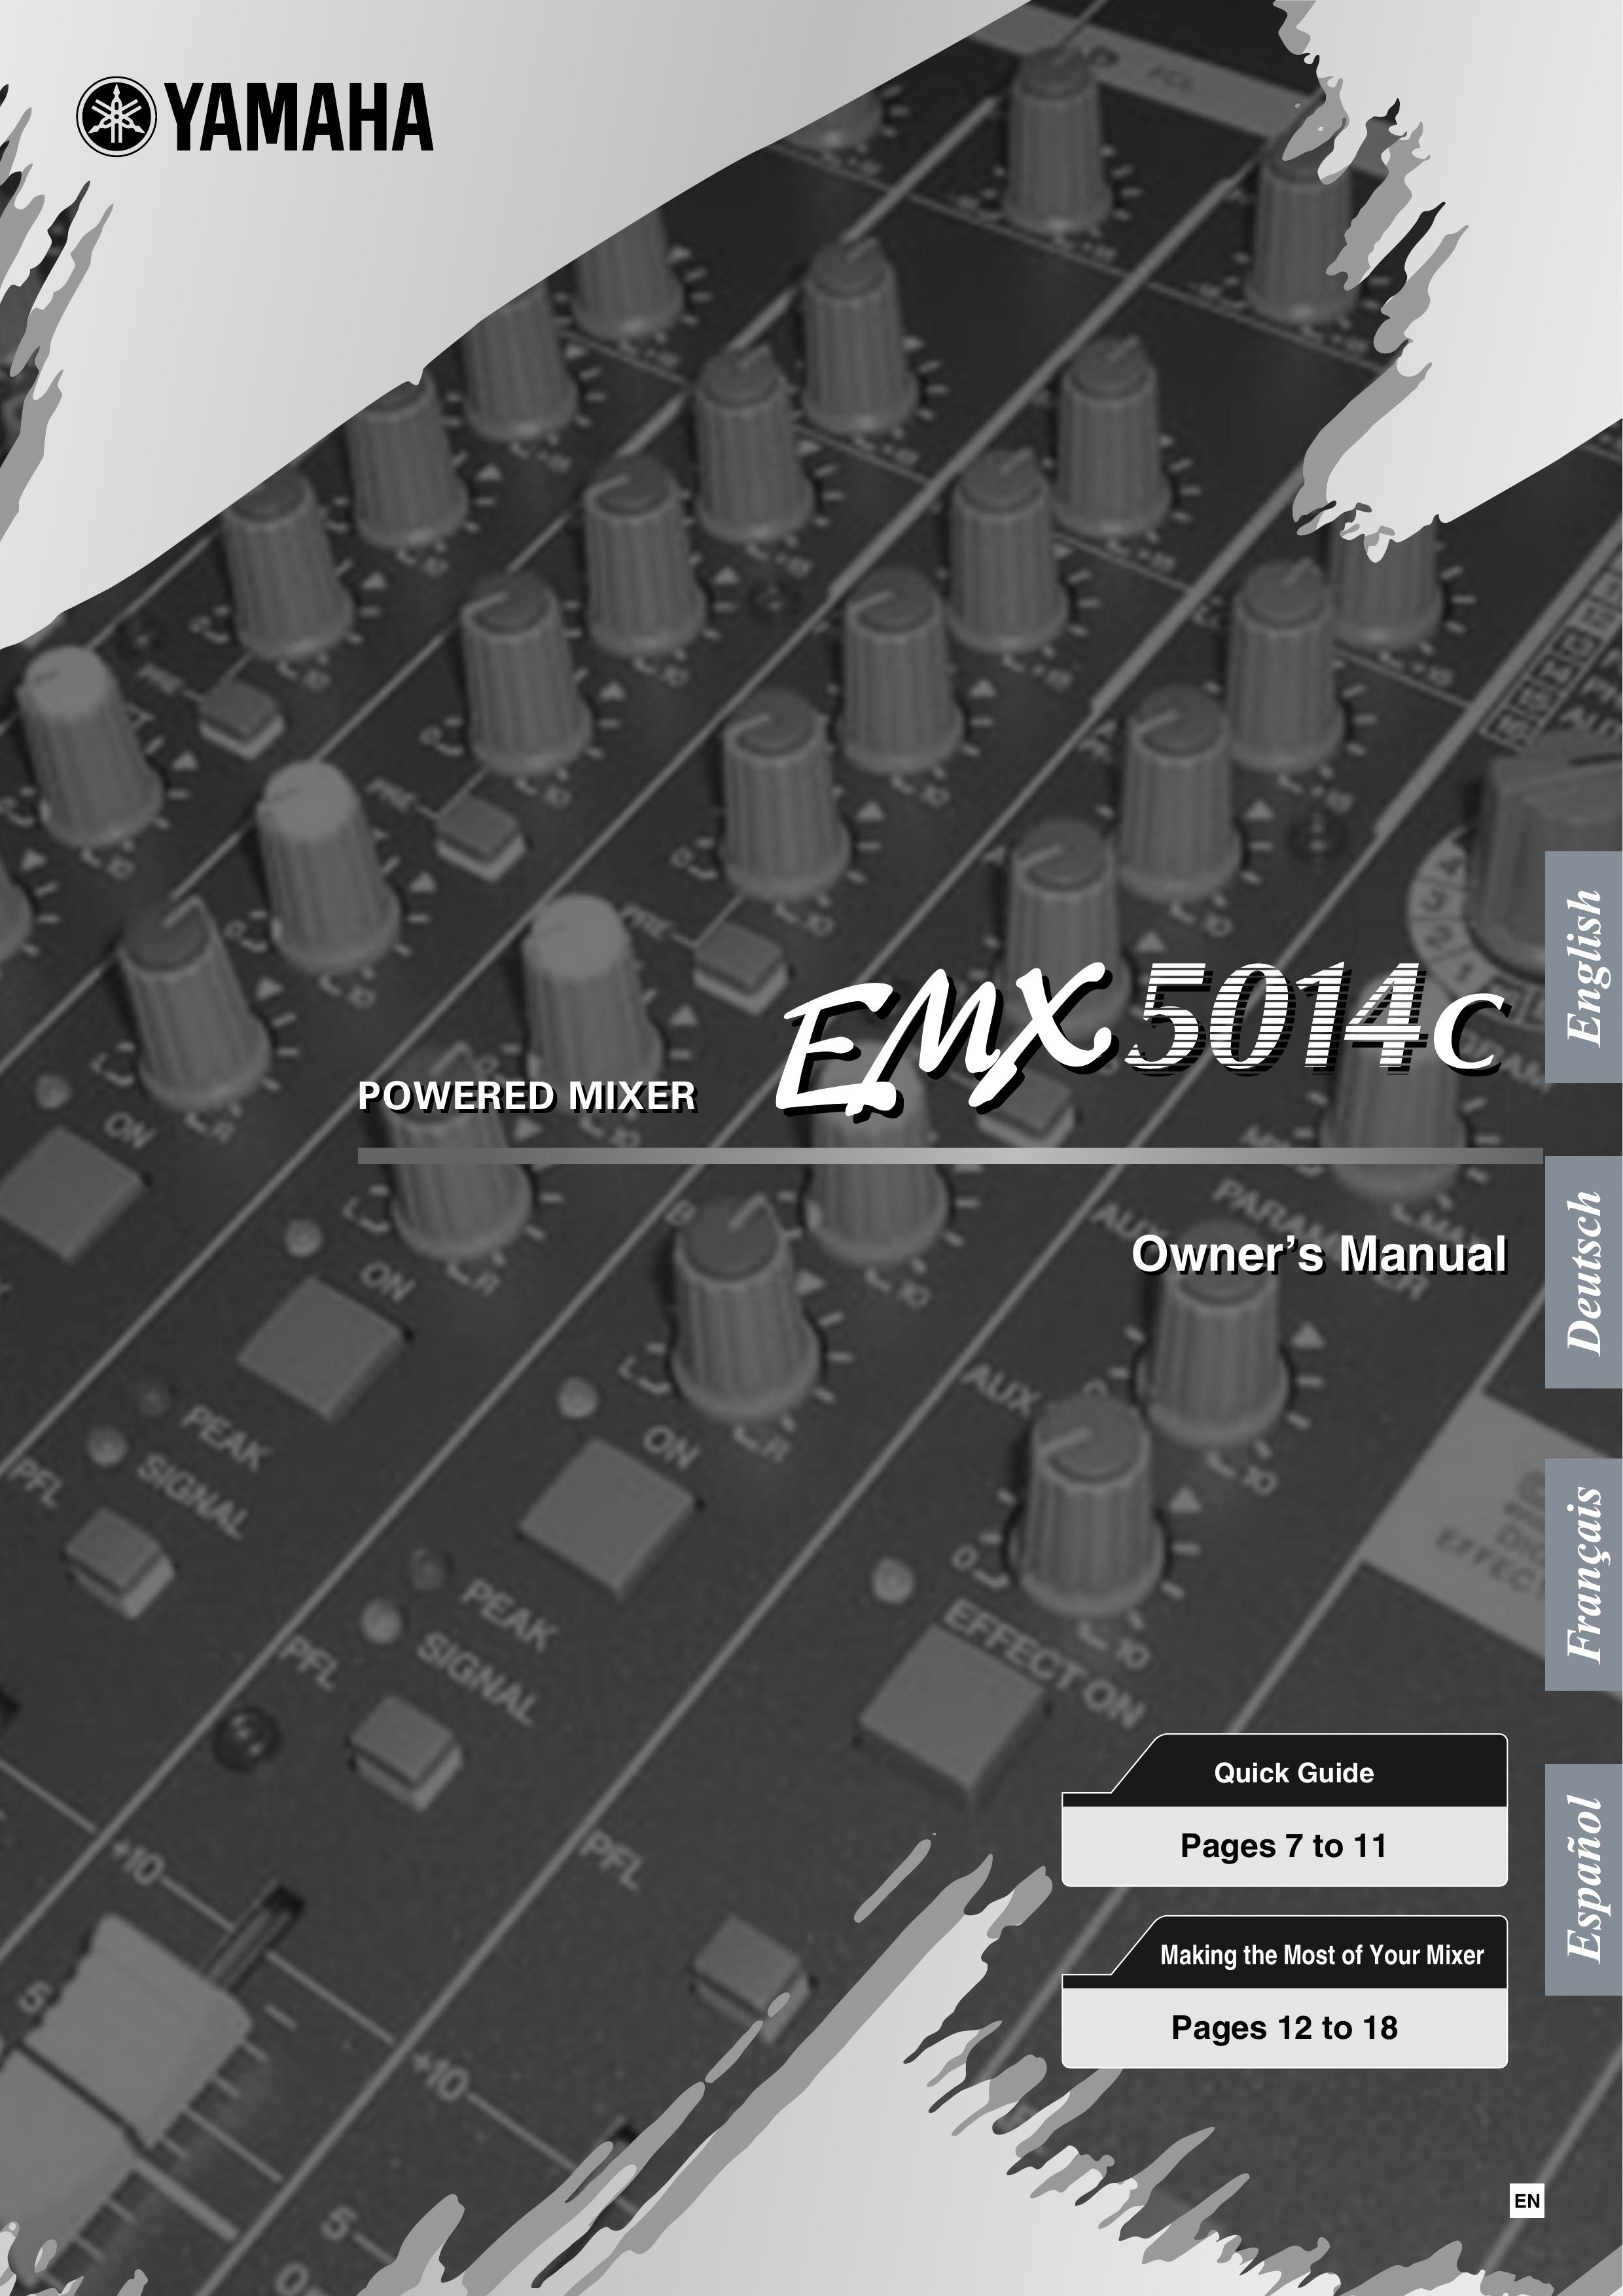 Yamaha EM5014C Music Mixer User Manual